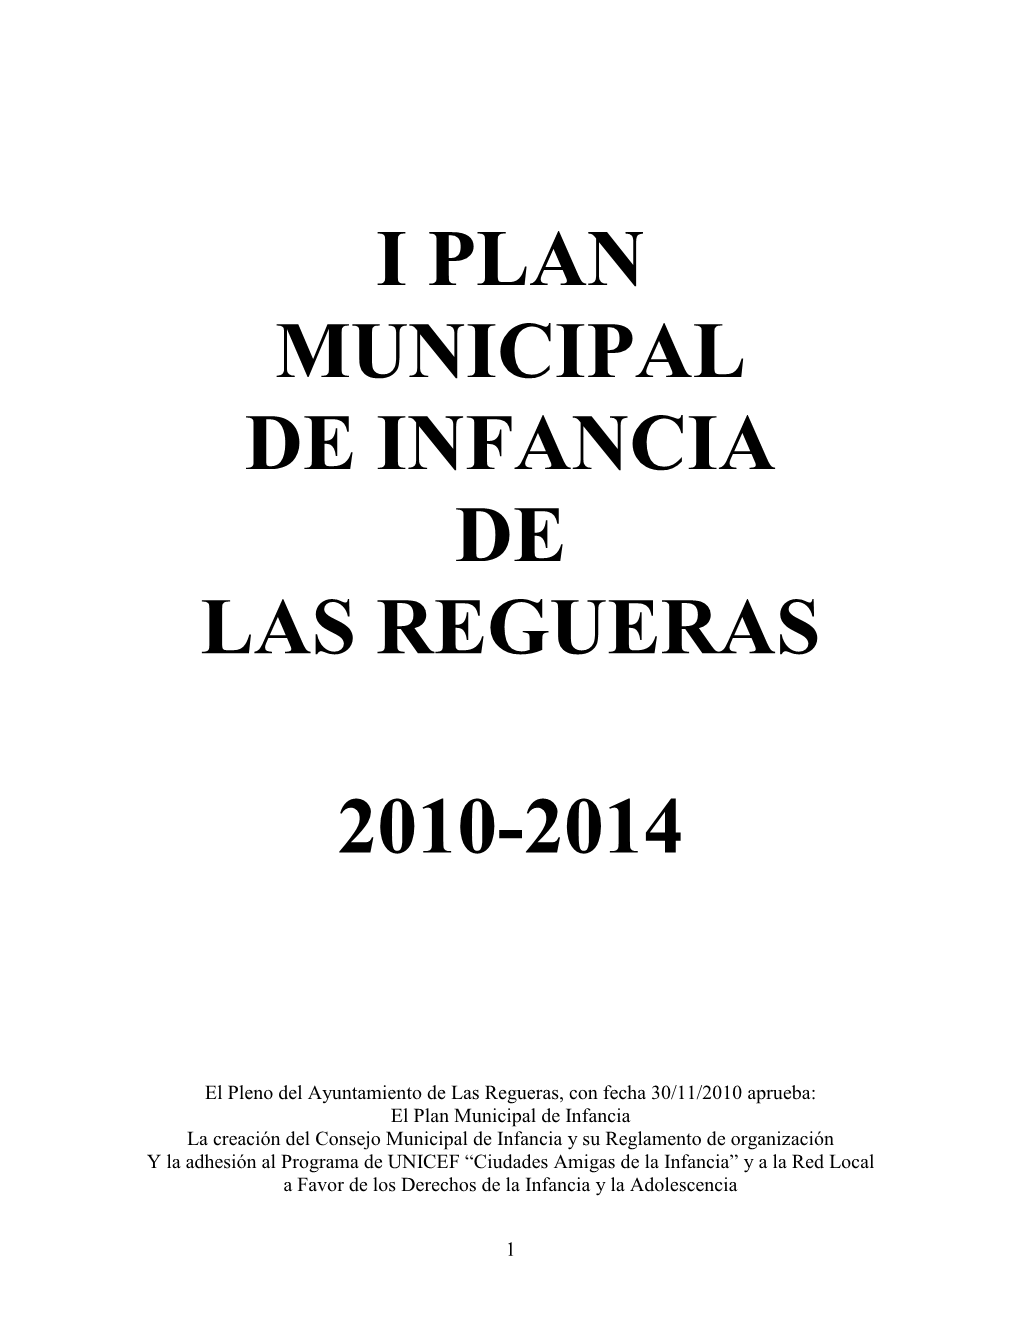 I Plan Integral De Infancia Del Ayuntamiento De Las Regueras, Que Se Desarrolla De La Siguiente Forma